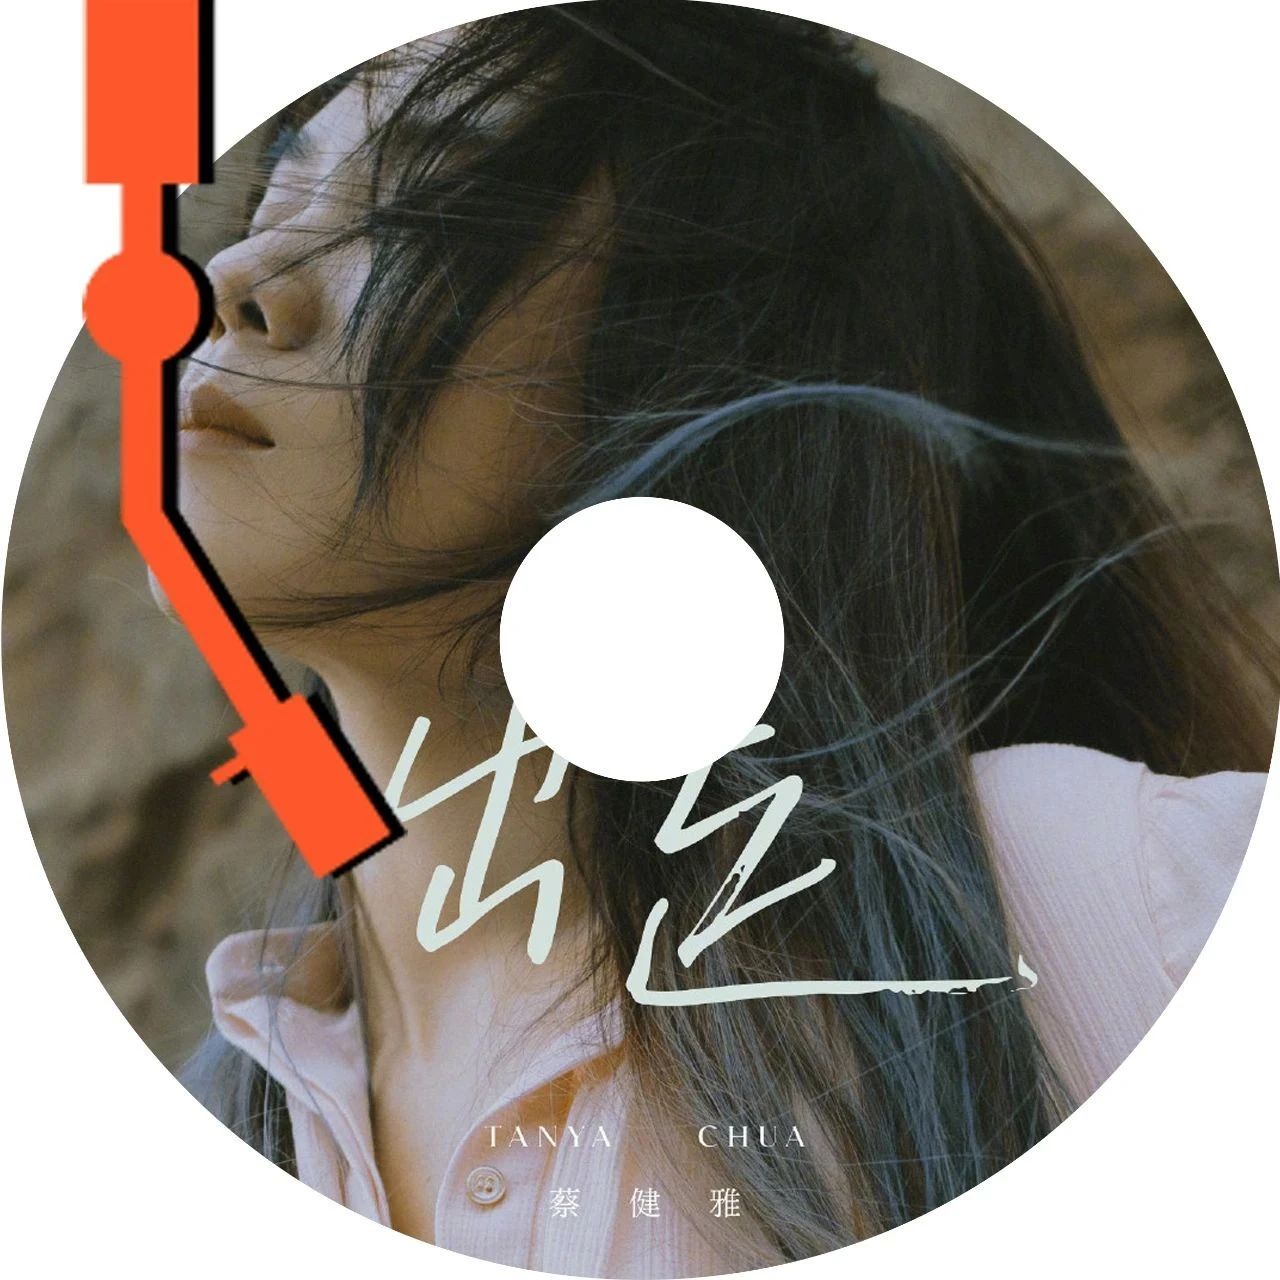 蔡健雅 2021 年新专辑首支歌曲发布